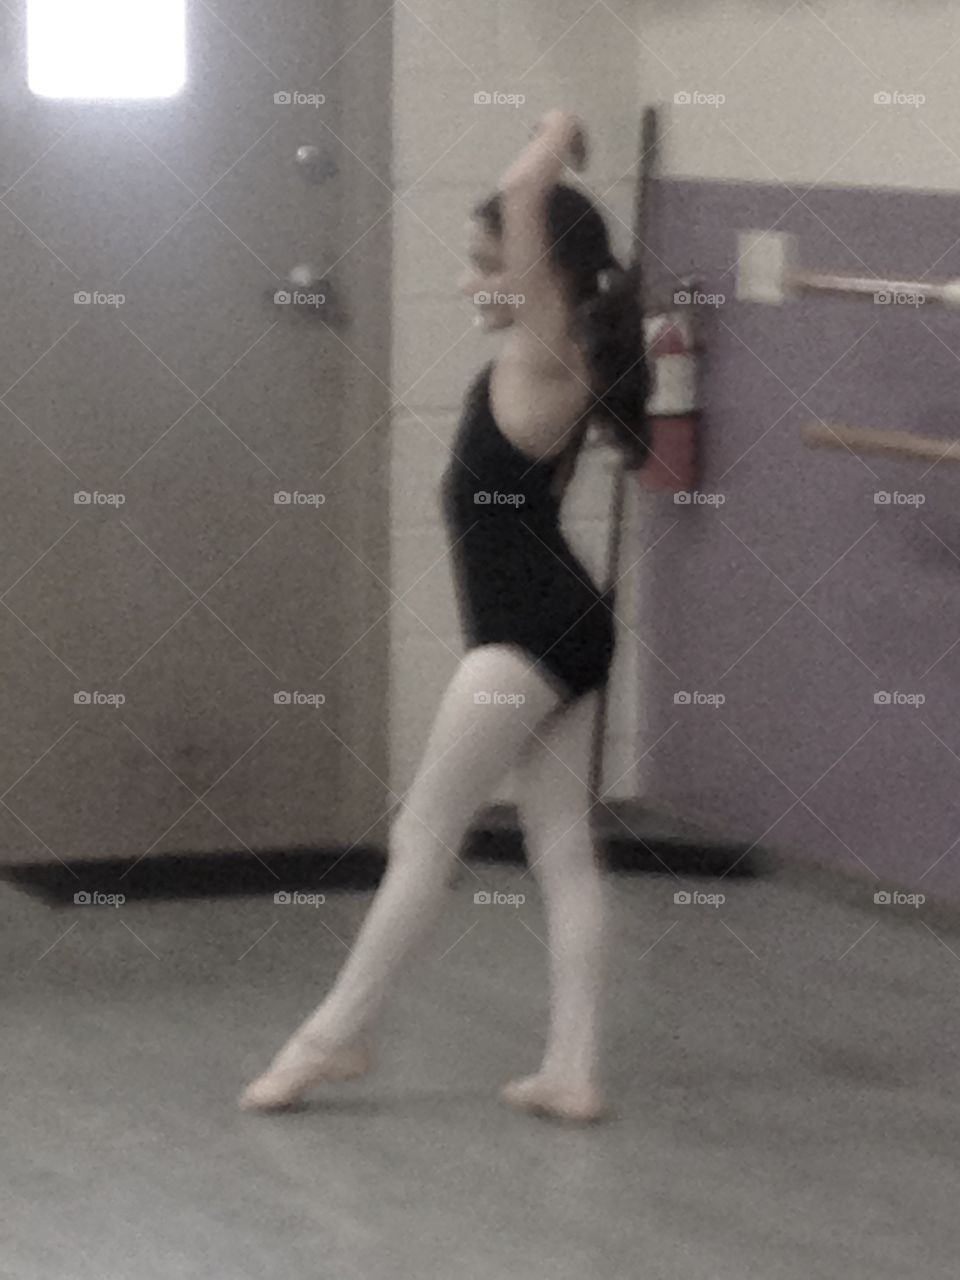 Ballet pose
